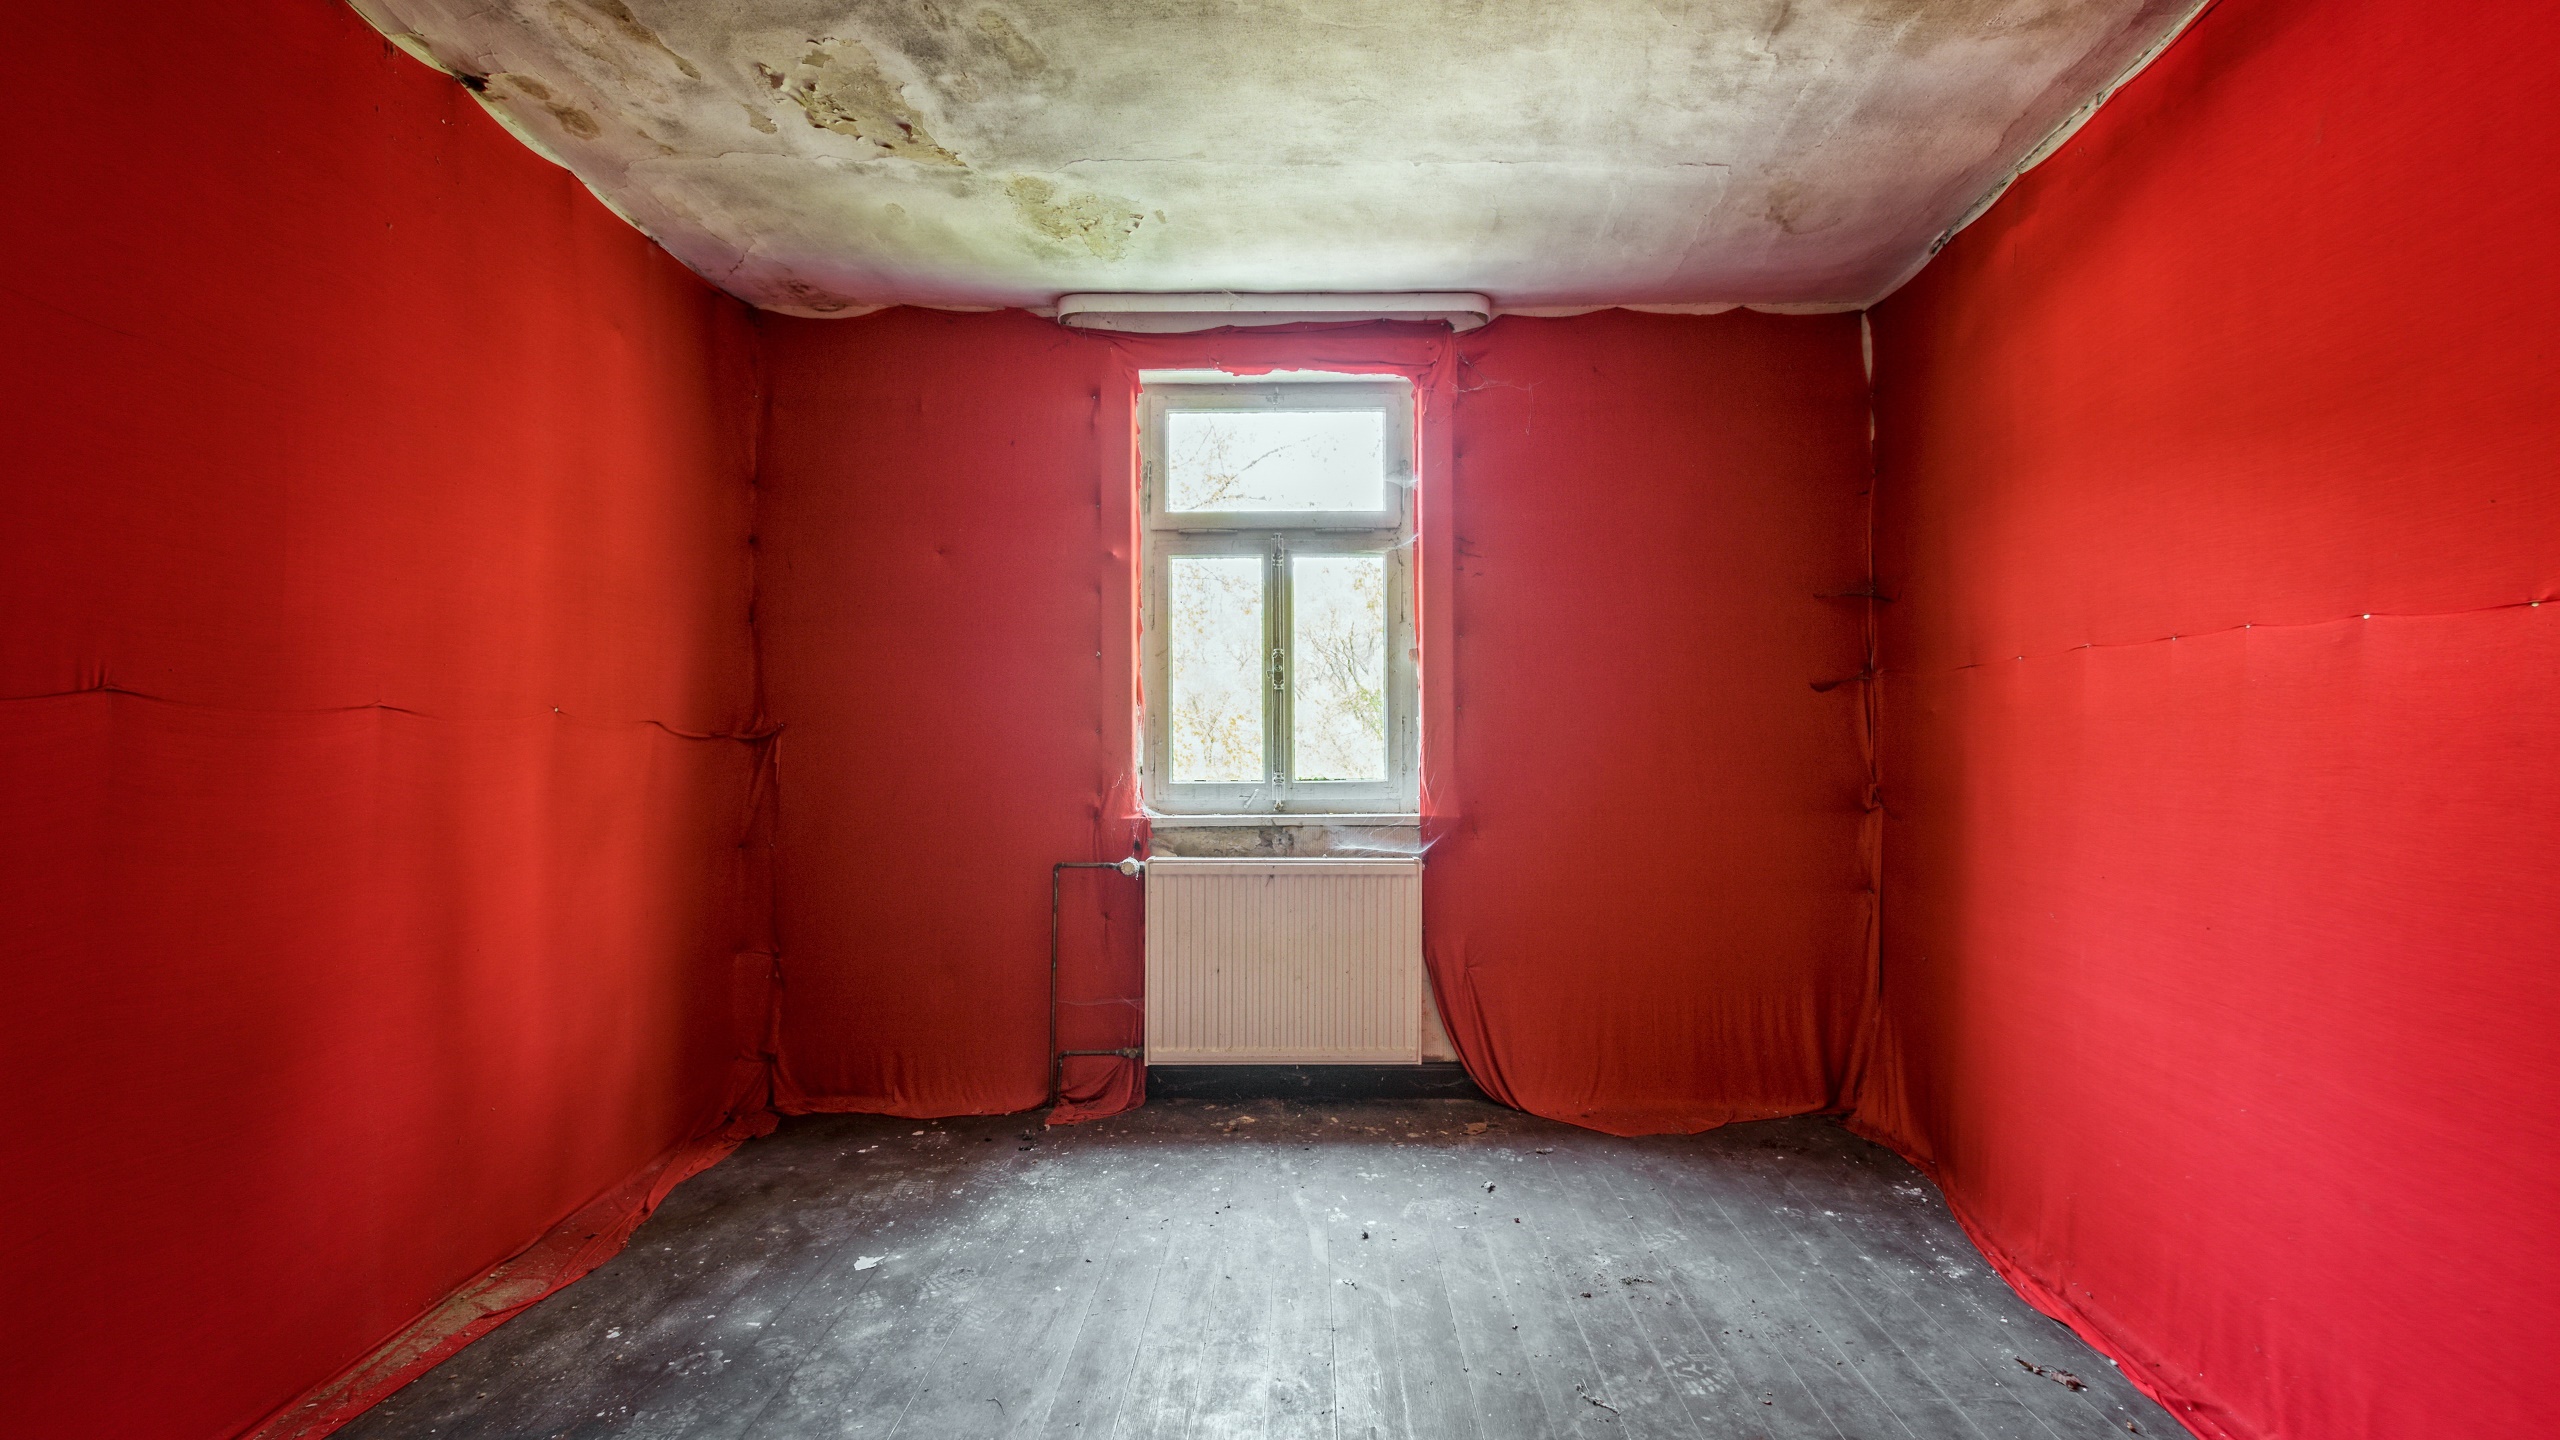 General 2560x1440 indoors room red empty  window radiator